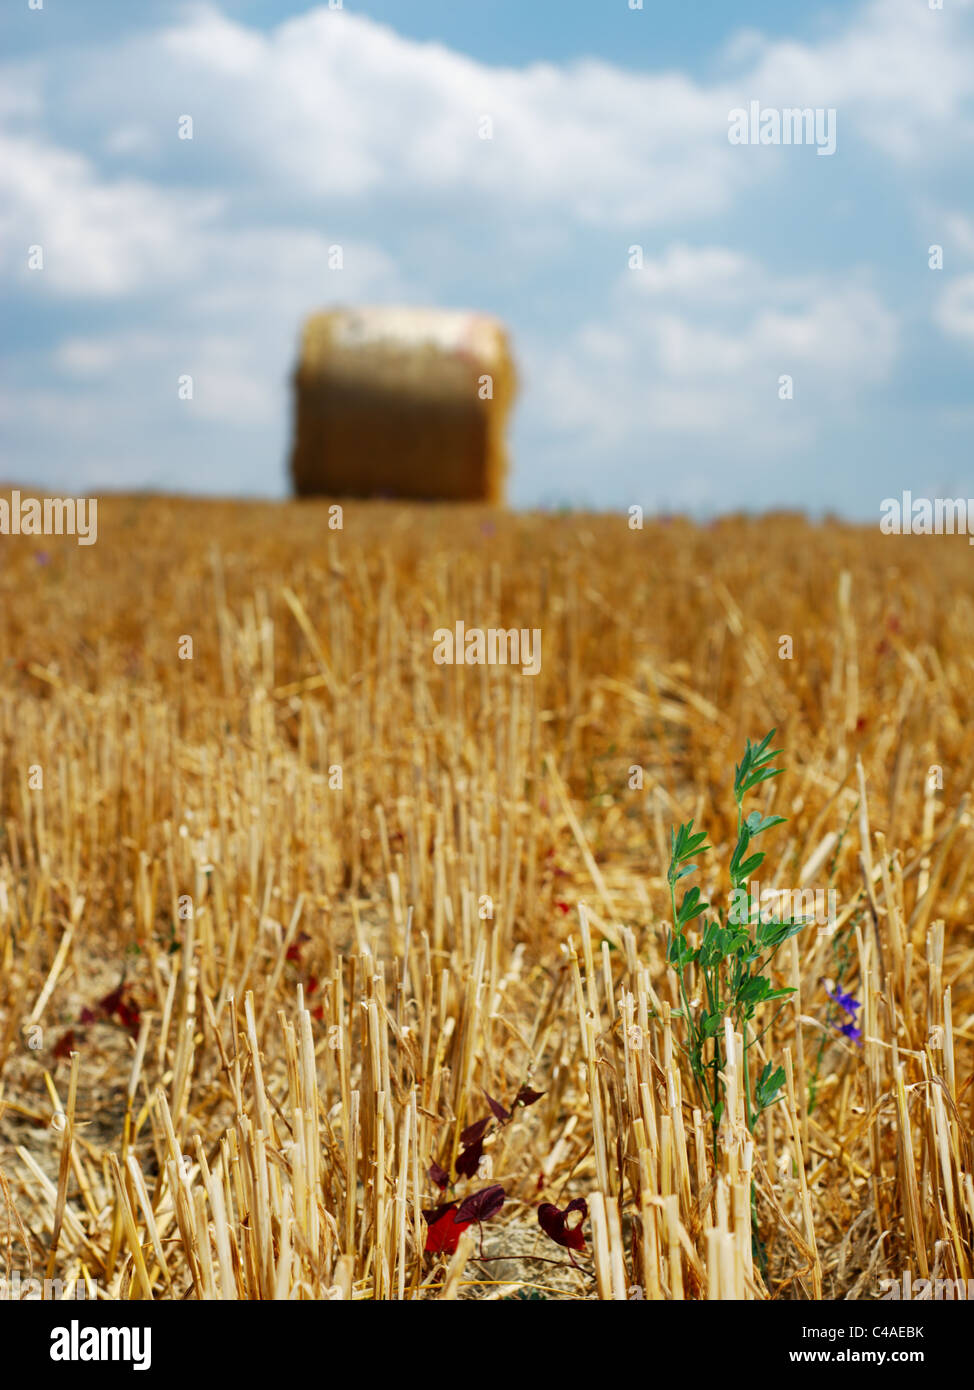 Lonely plante verte dans la zone de golden à sec avec des tiges de botte de paille en arrière-plan (selective focus on plante dans l'avant-plan) Banque D'Images